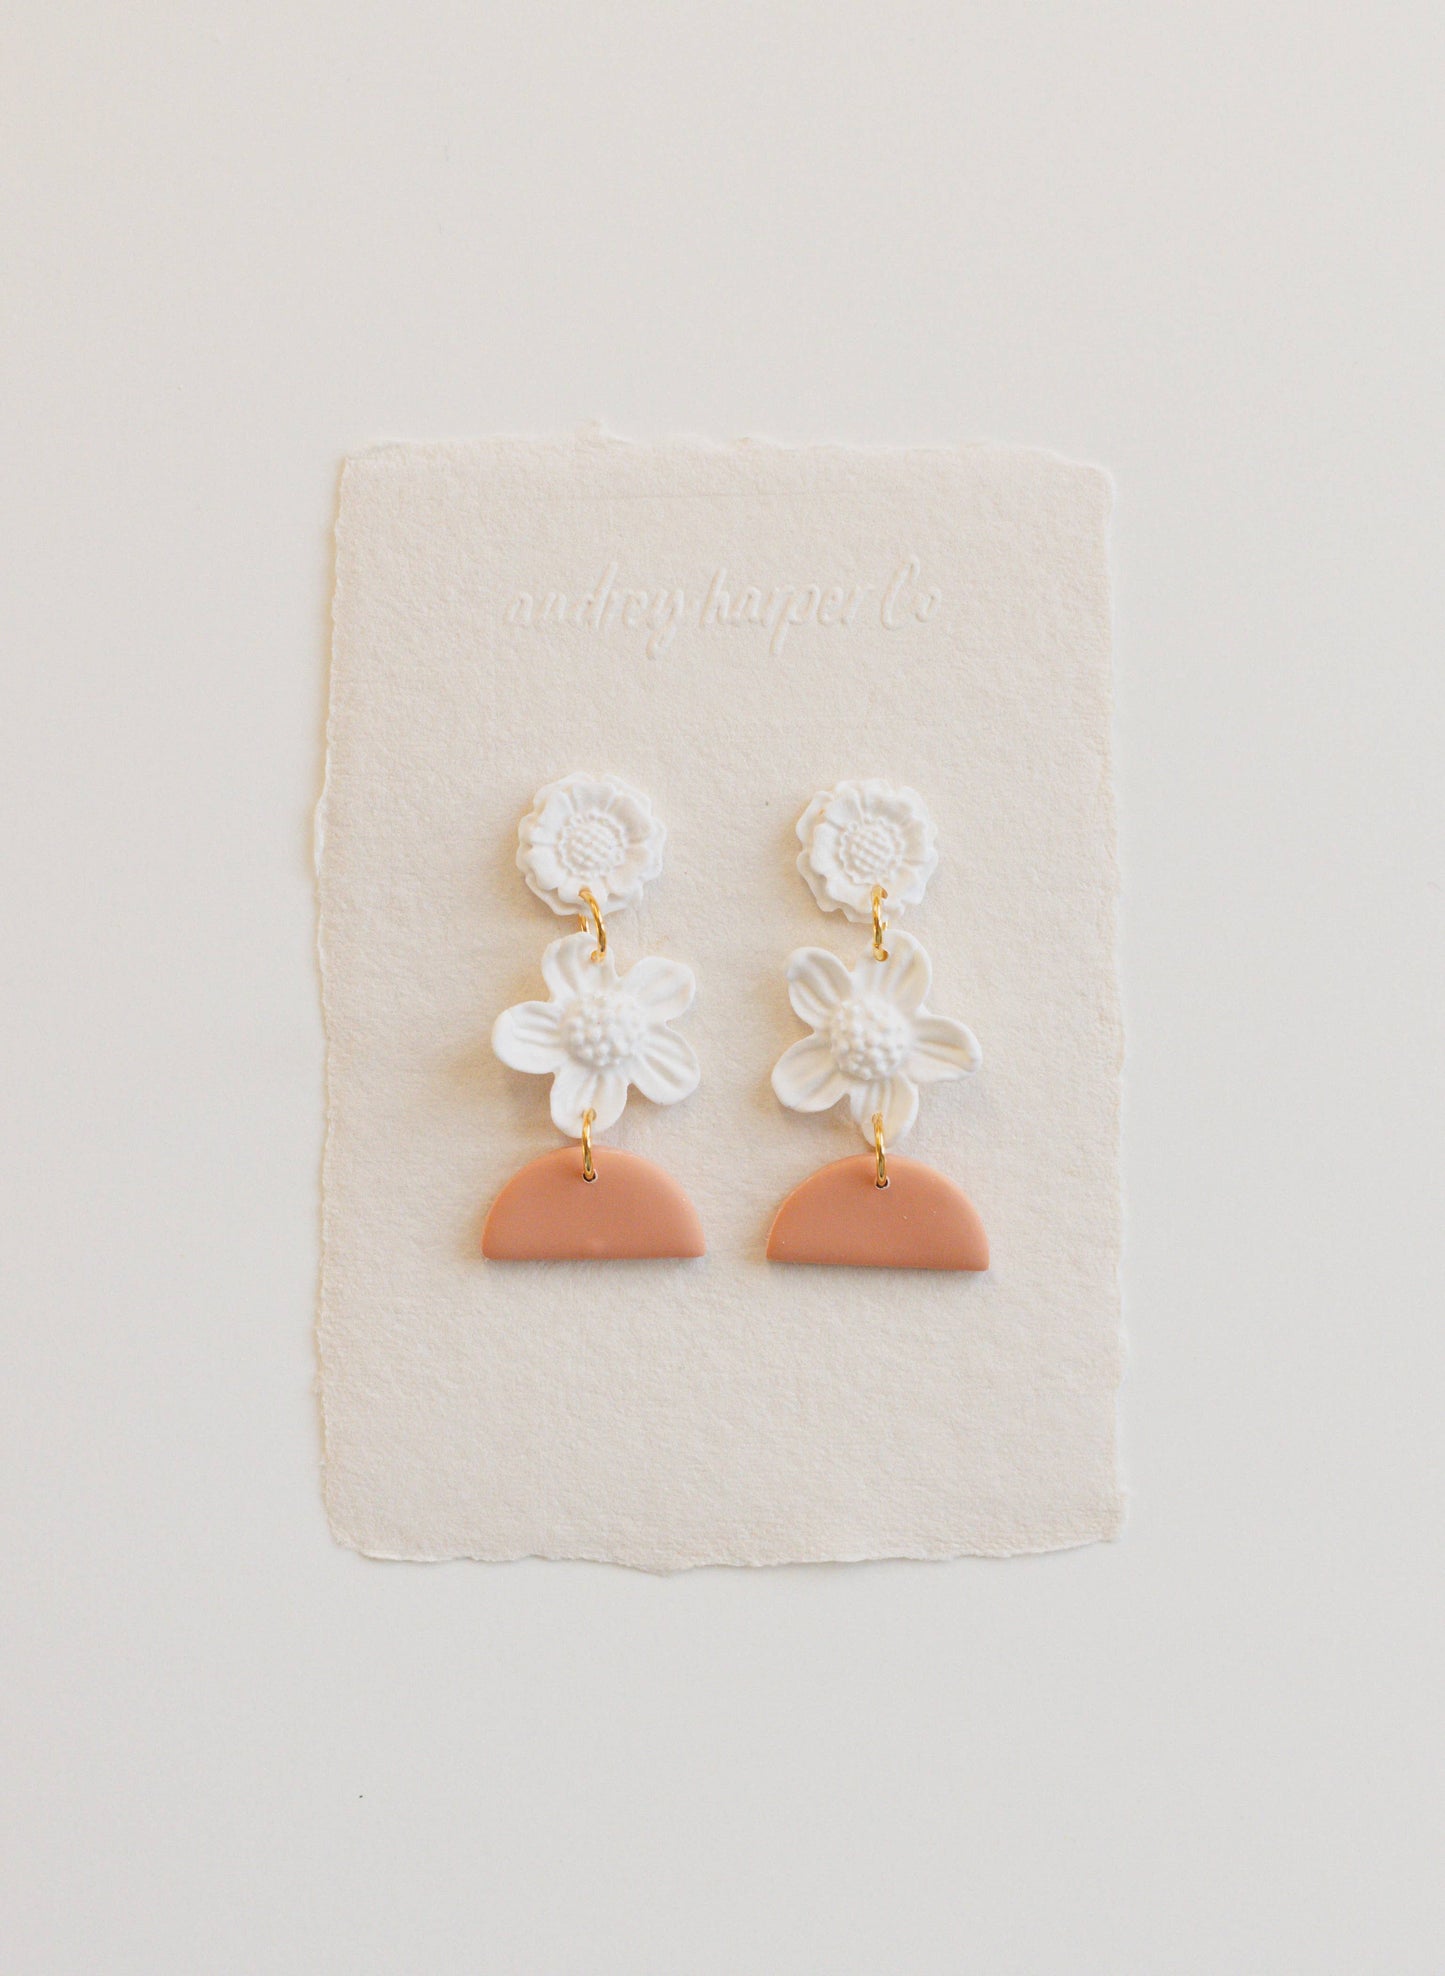 Dangling White Flower Clay Earrings